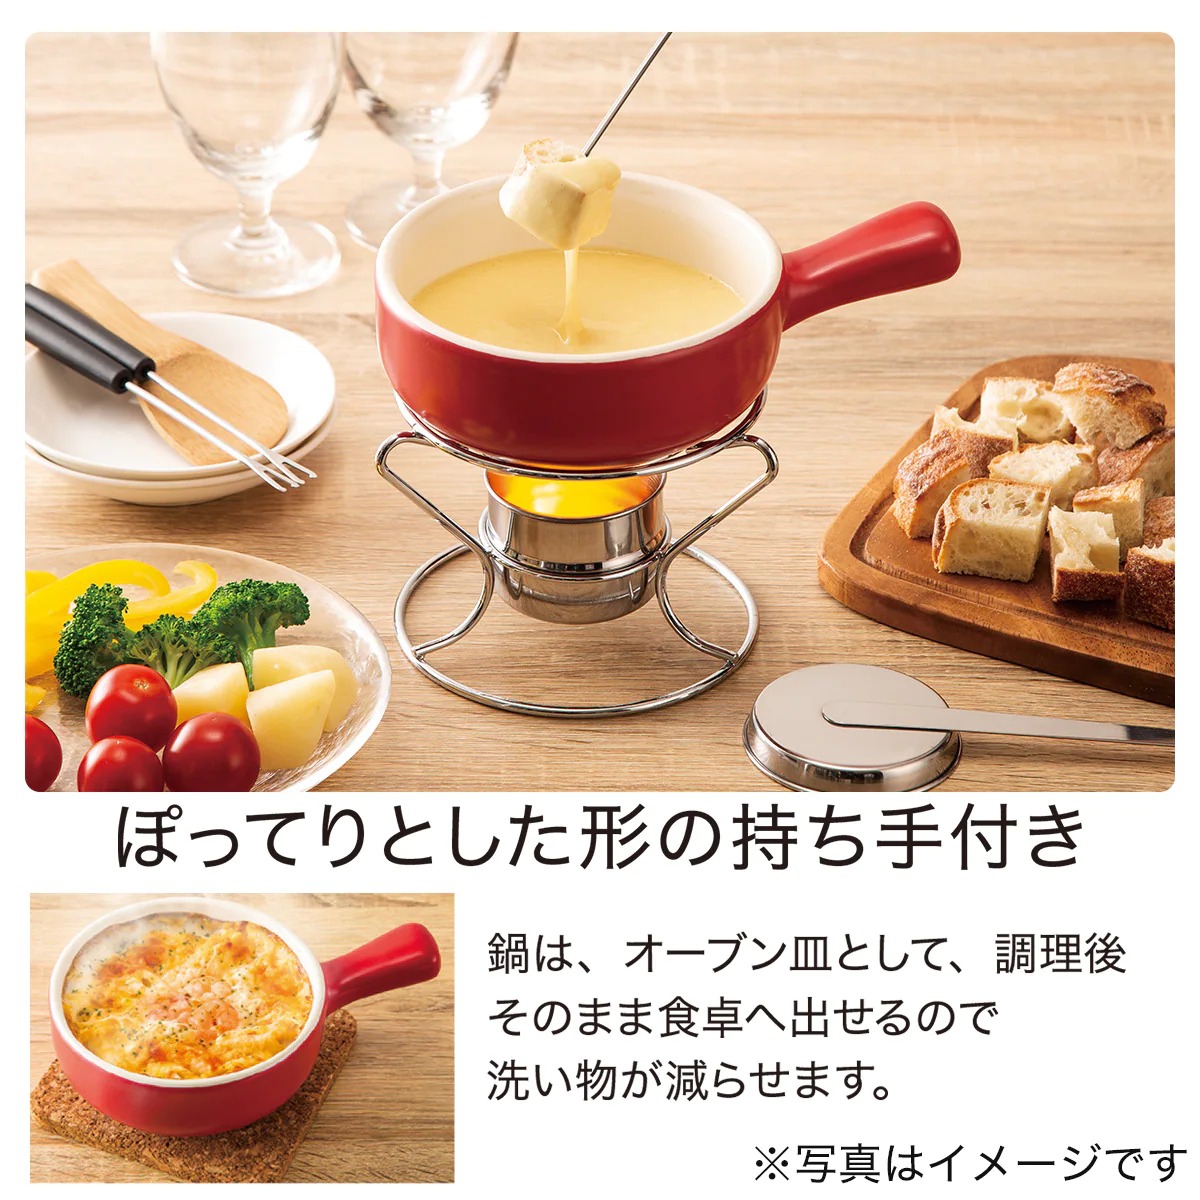 NITORI(ニトリ) チーズフォンデュセット ぽってりーの商品画像3 